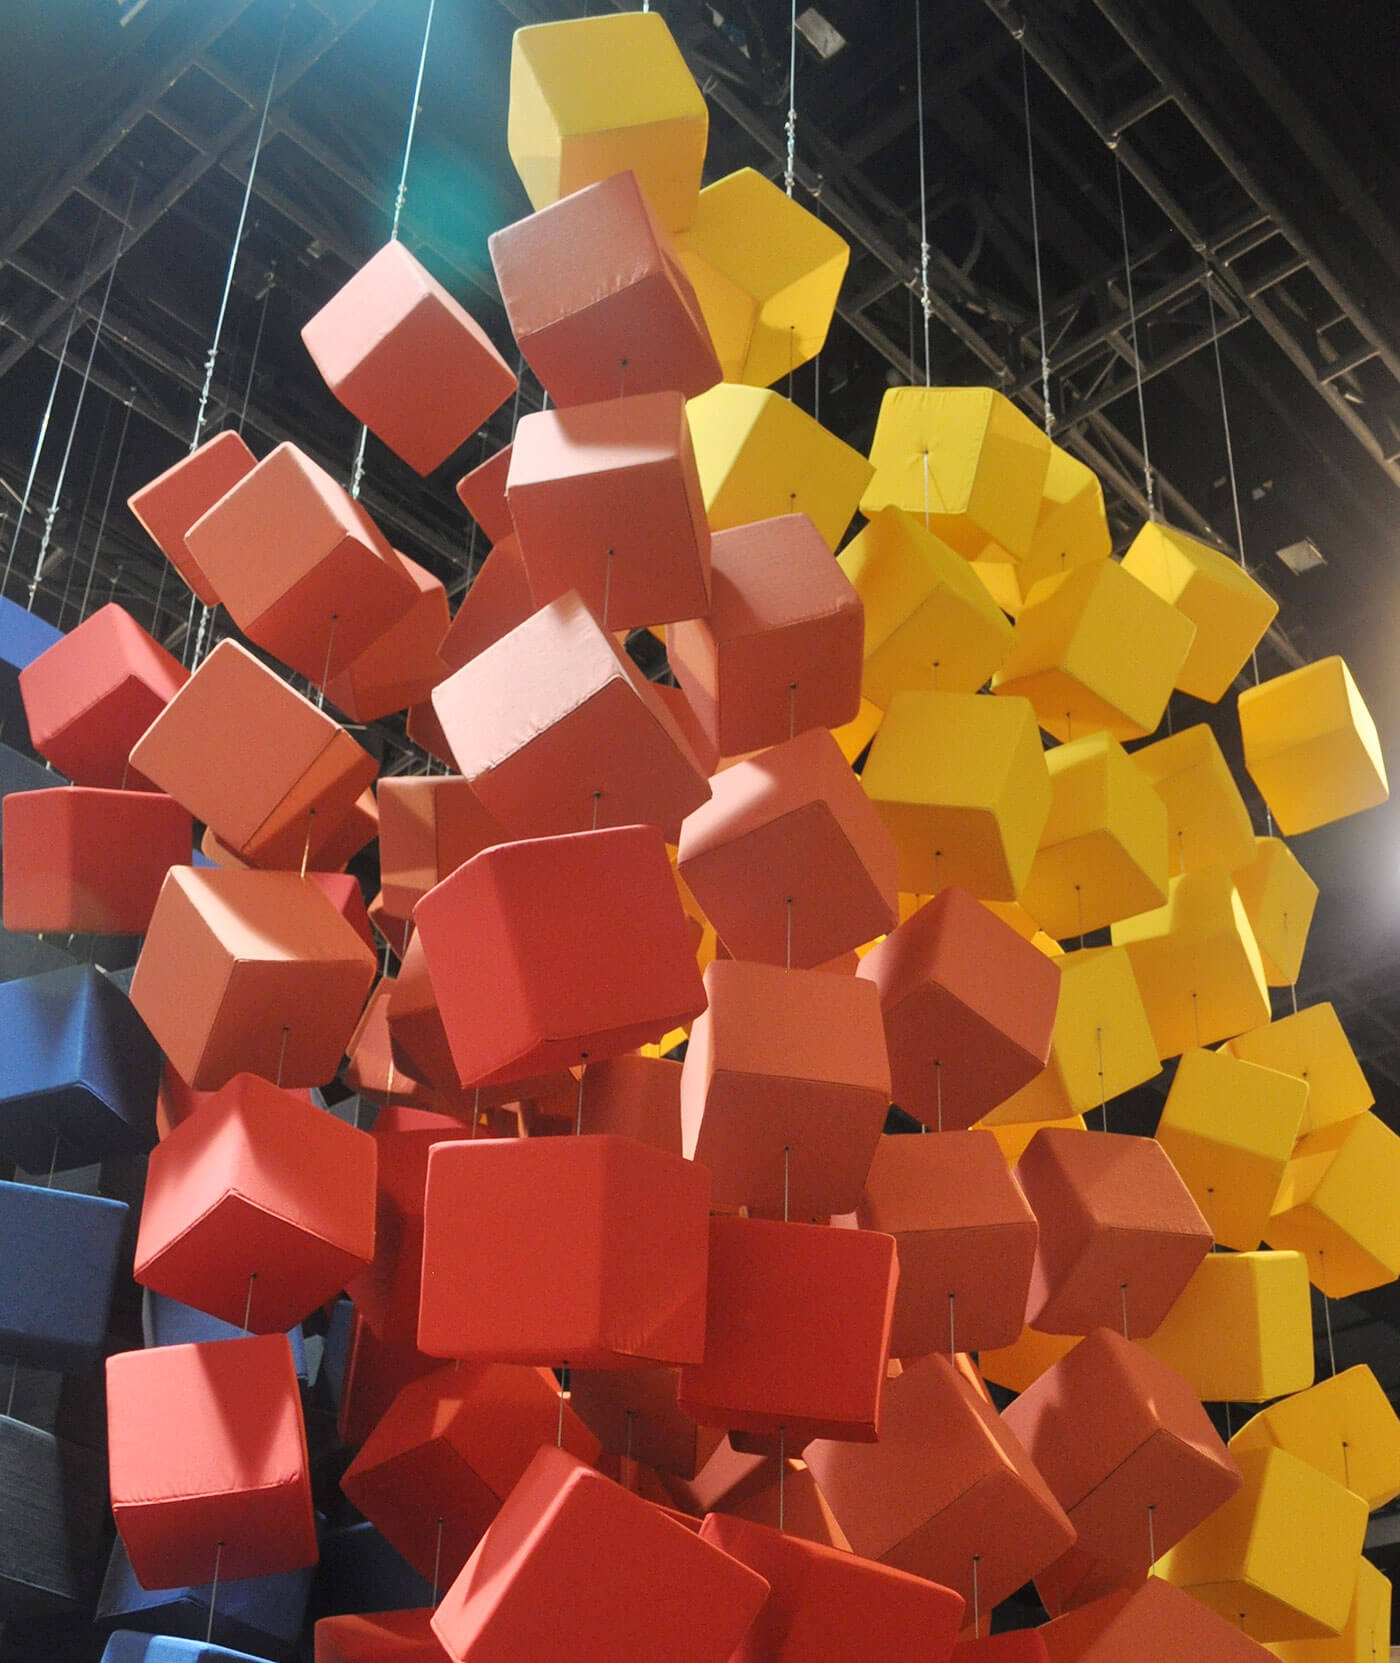 Sunbrella Spectrum se compose de cubes suspendus et recouverts de tissus d’ameublement Sunbrella de couleurs vives.